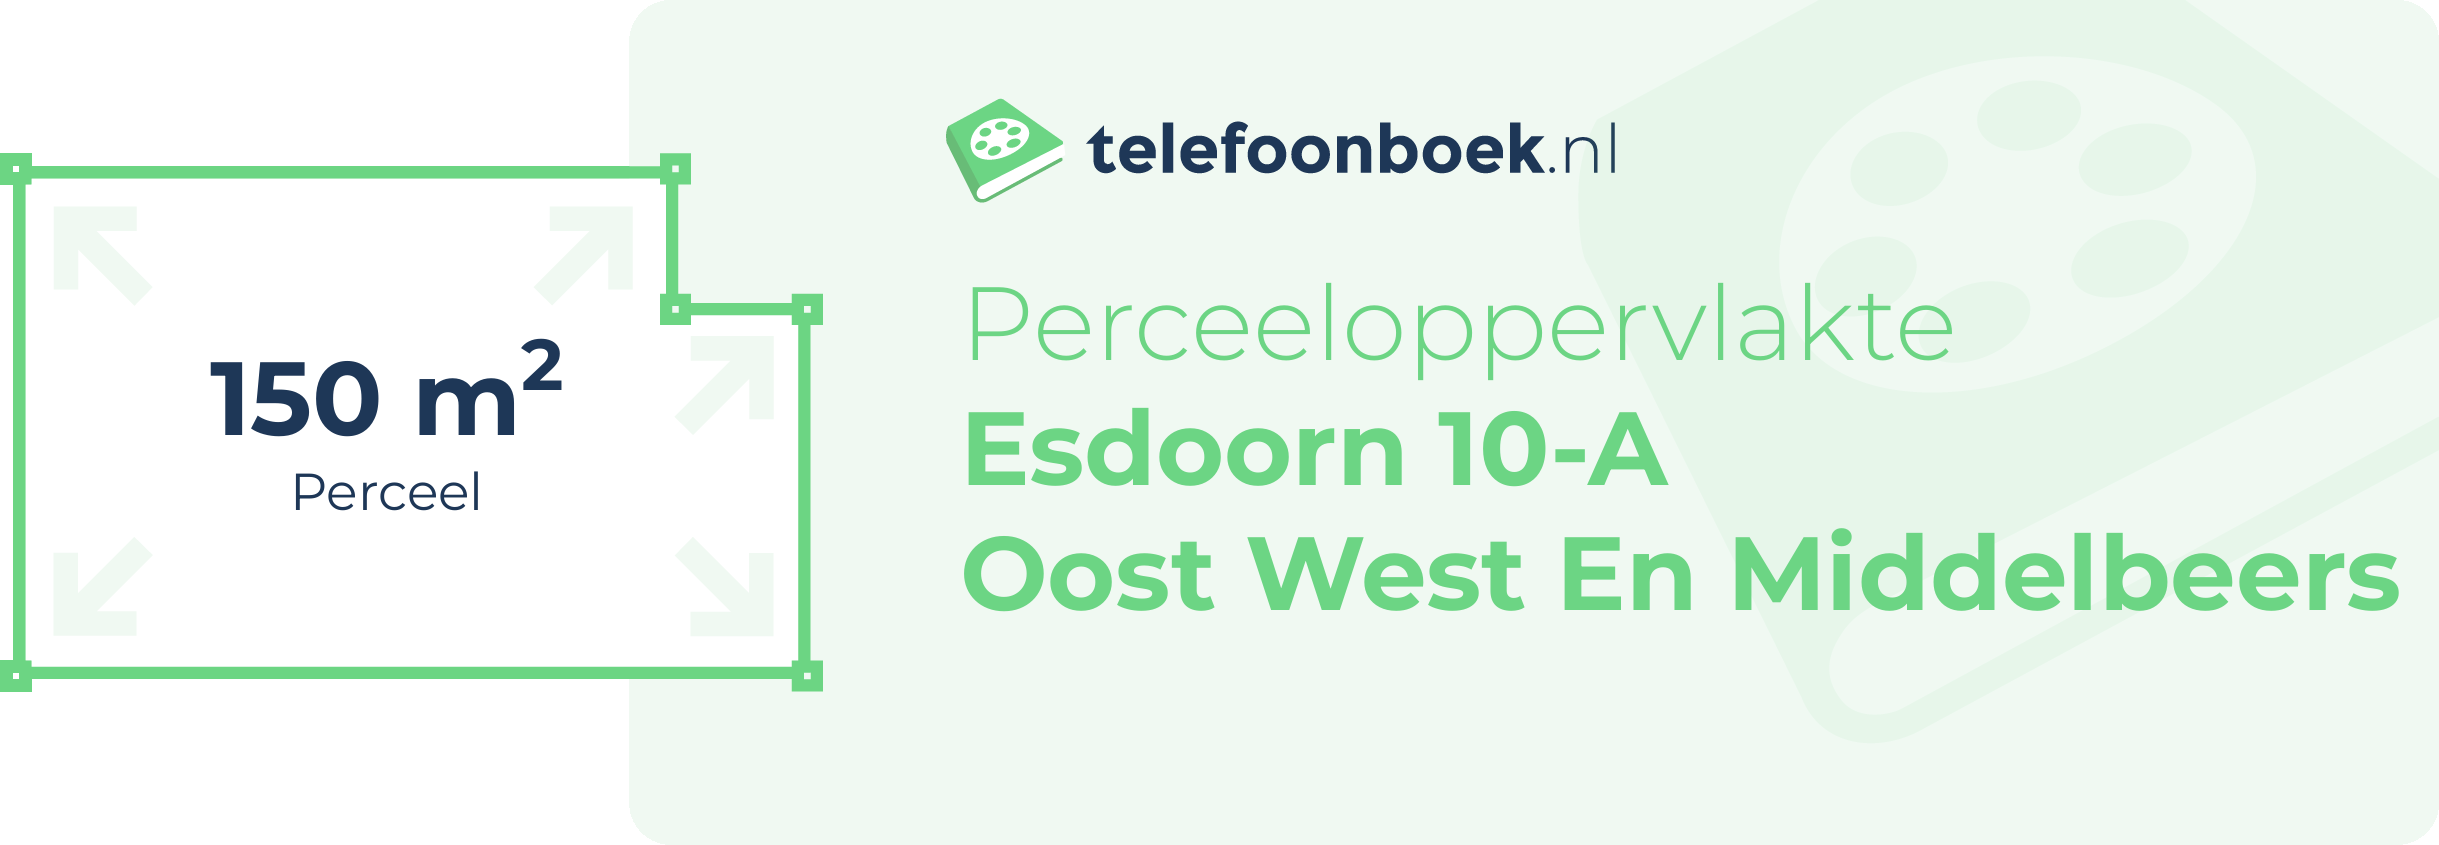 Perceeloppervlakte Esdoorn 10-A Oost West En Middelbeers